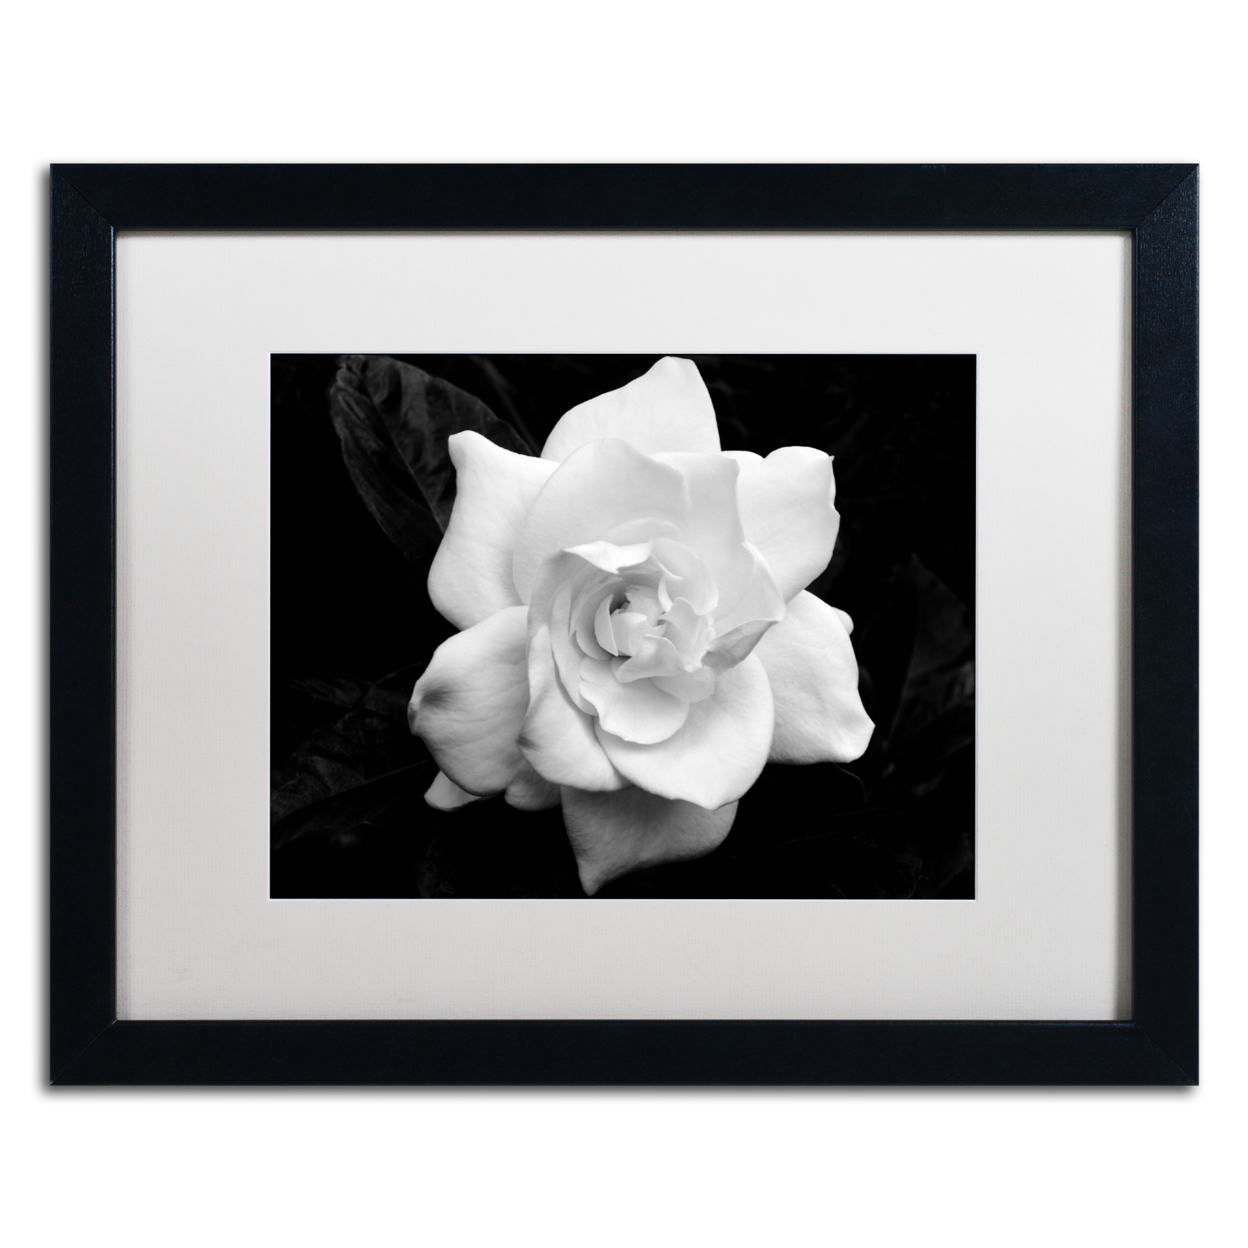 Kurt Shaffer 'Gardenia In Black And White' Black Wooden Framed Art 18 X 22 Inches